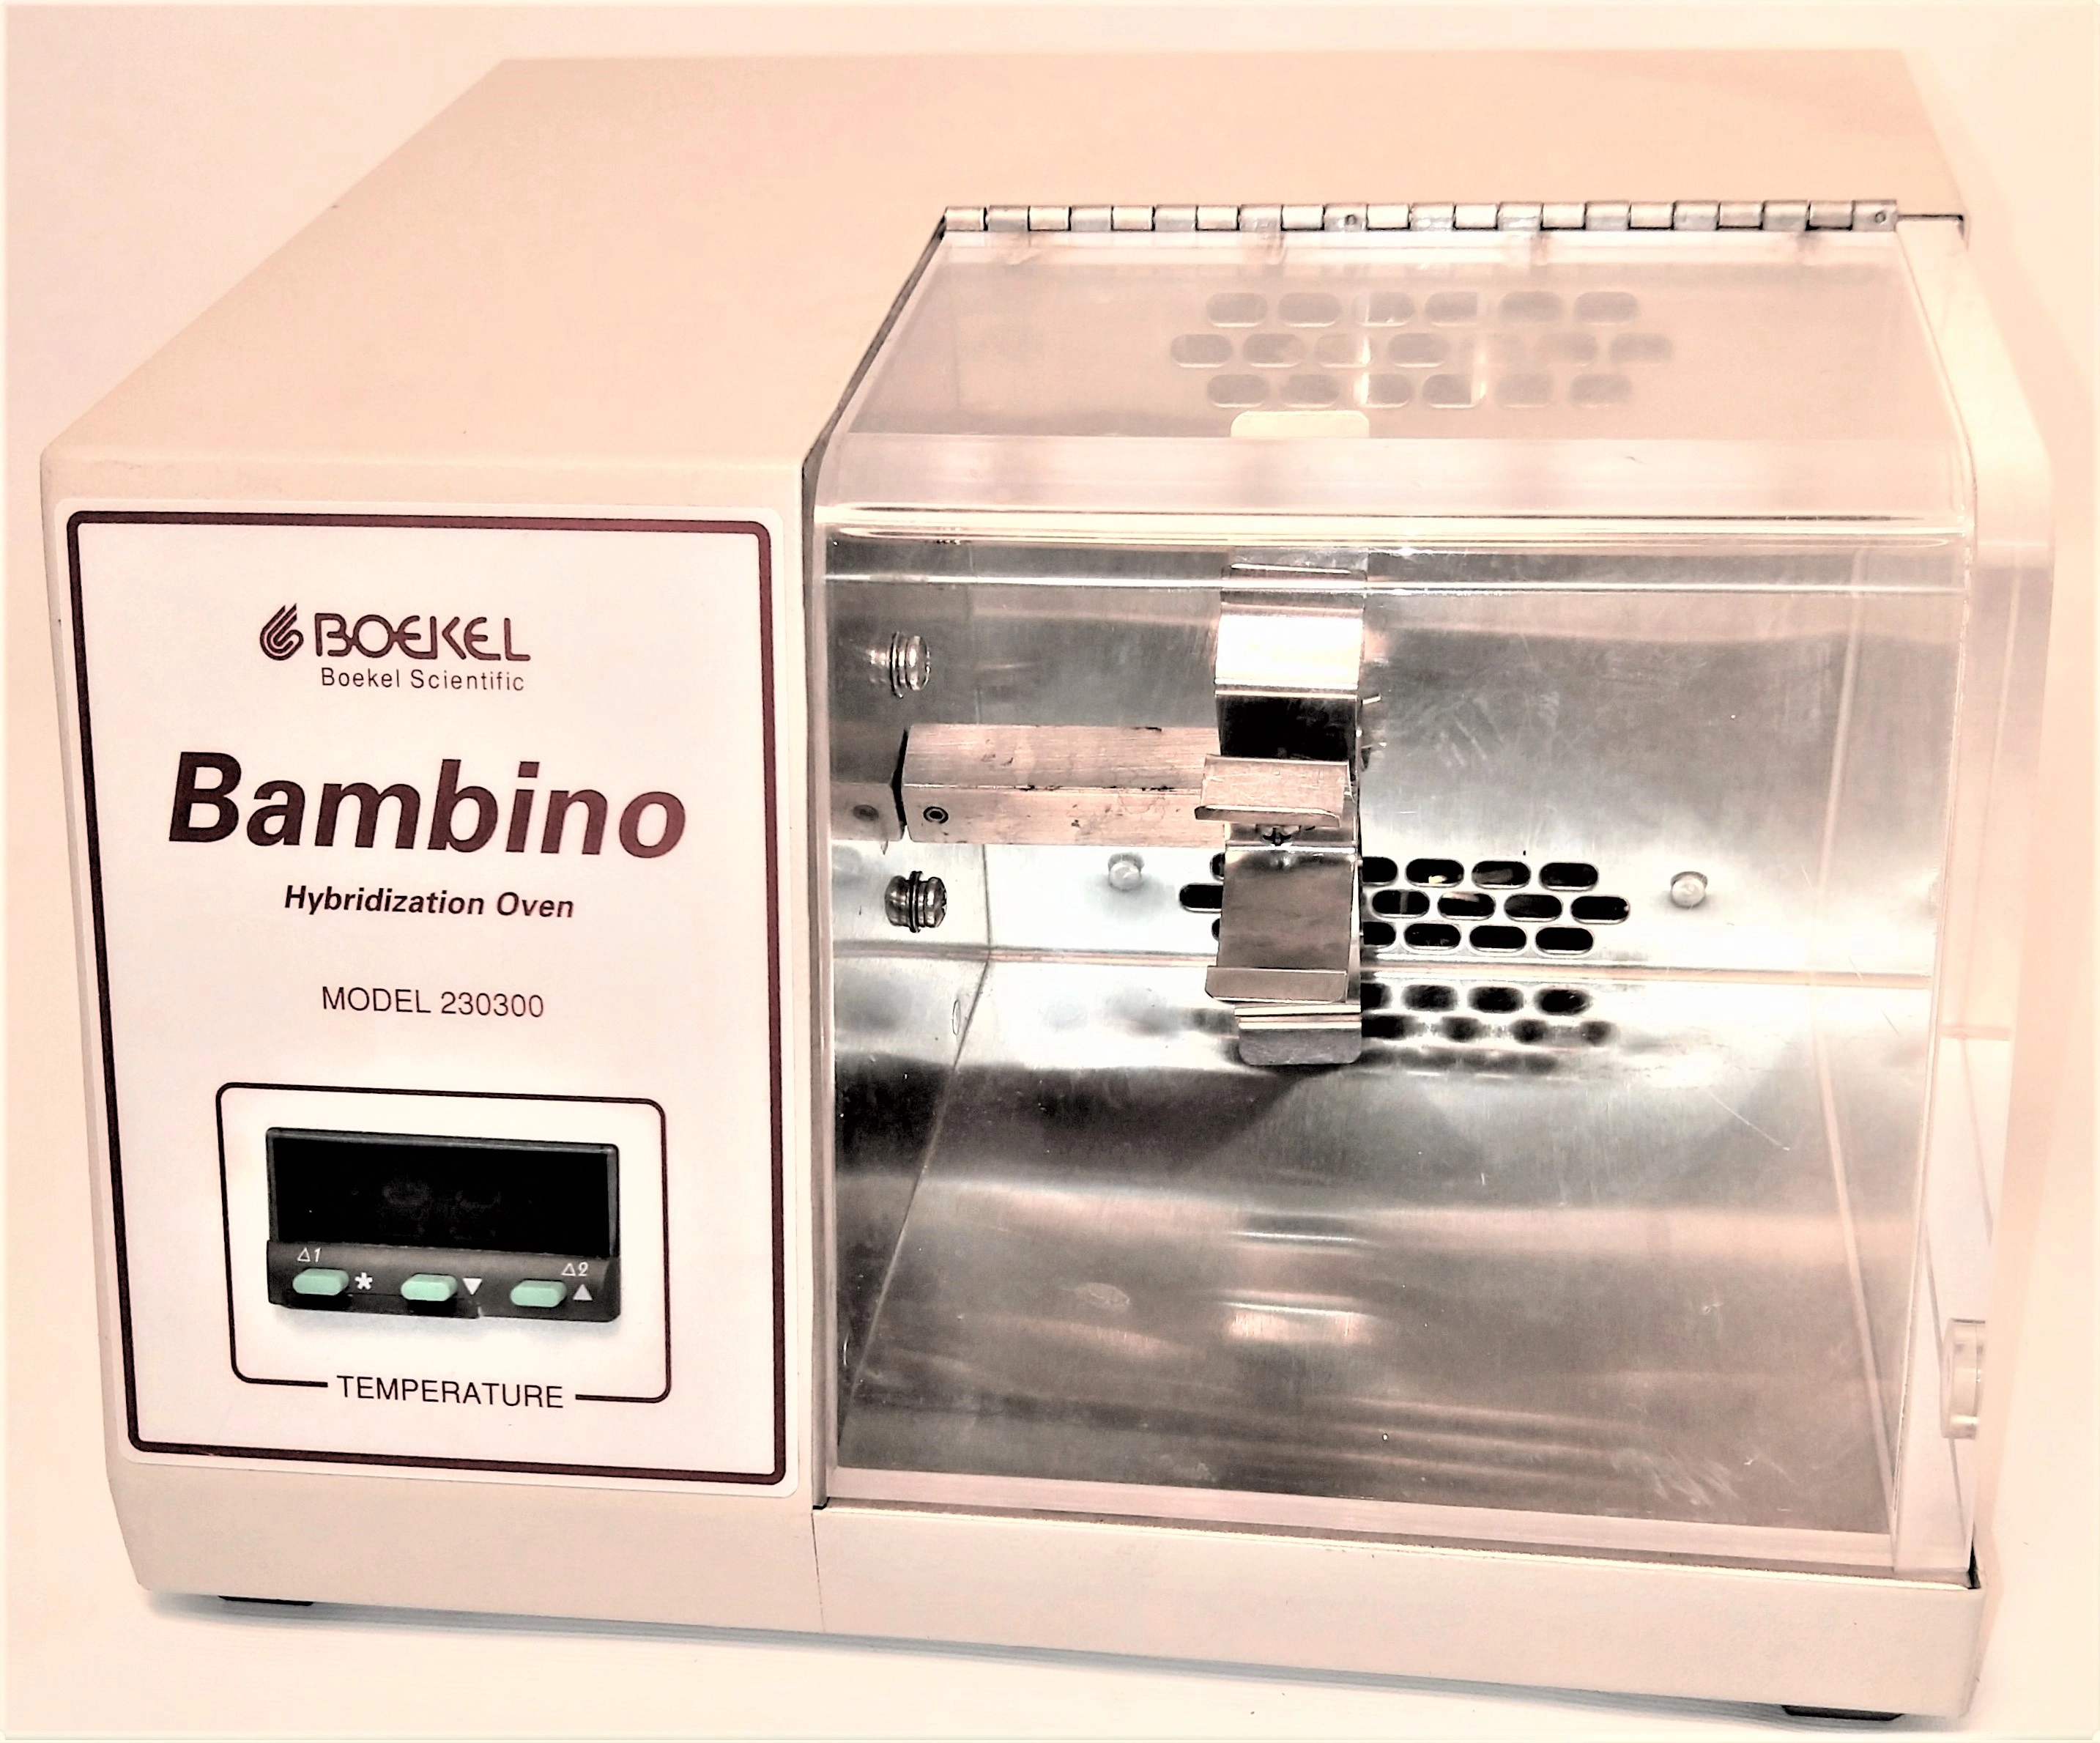 Boekel Bambino 230300 Hybridization Oven